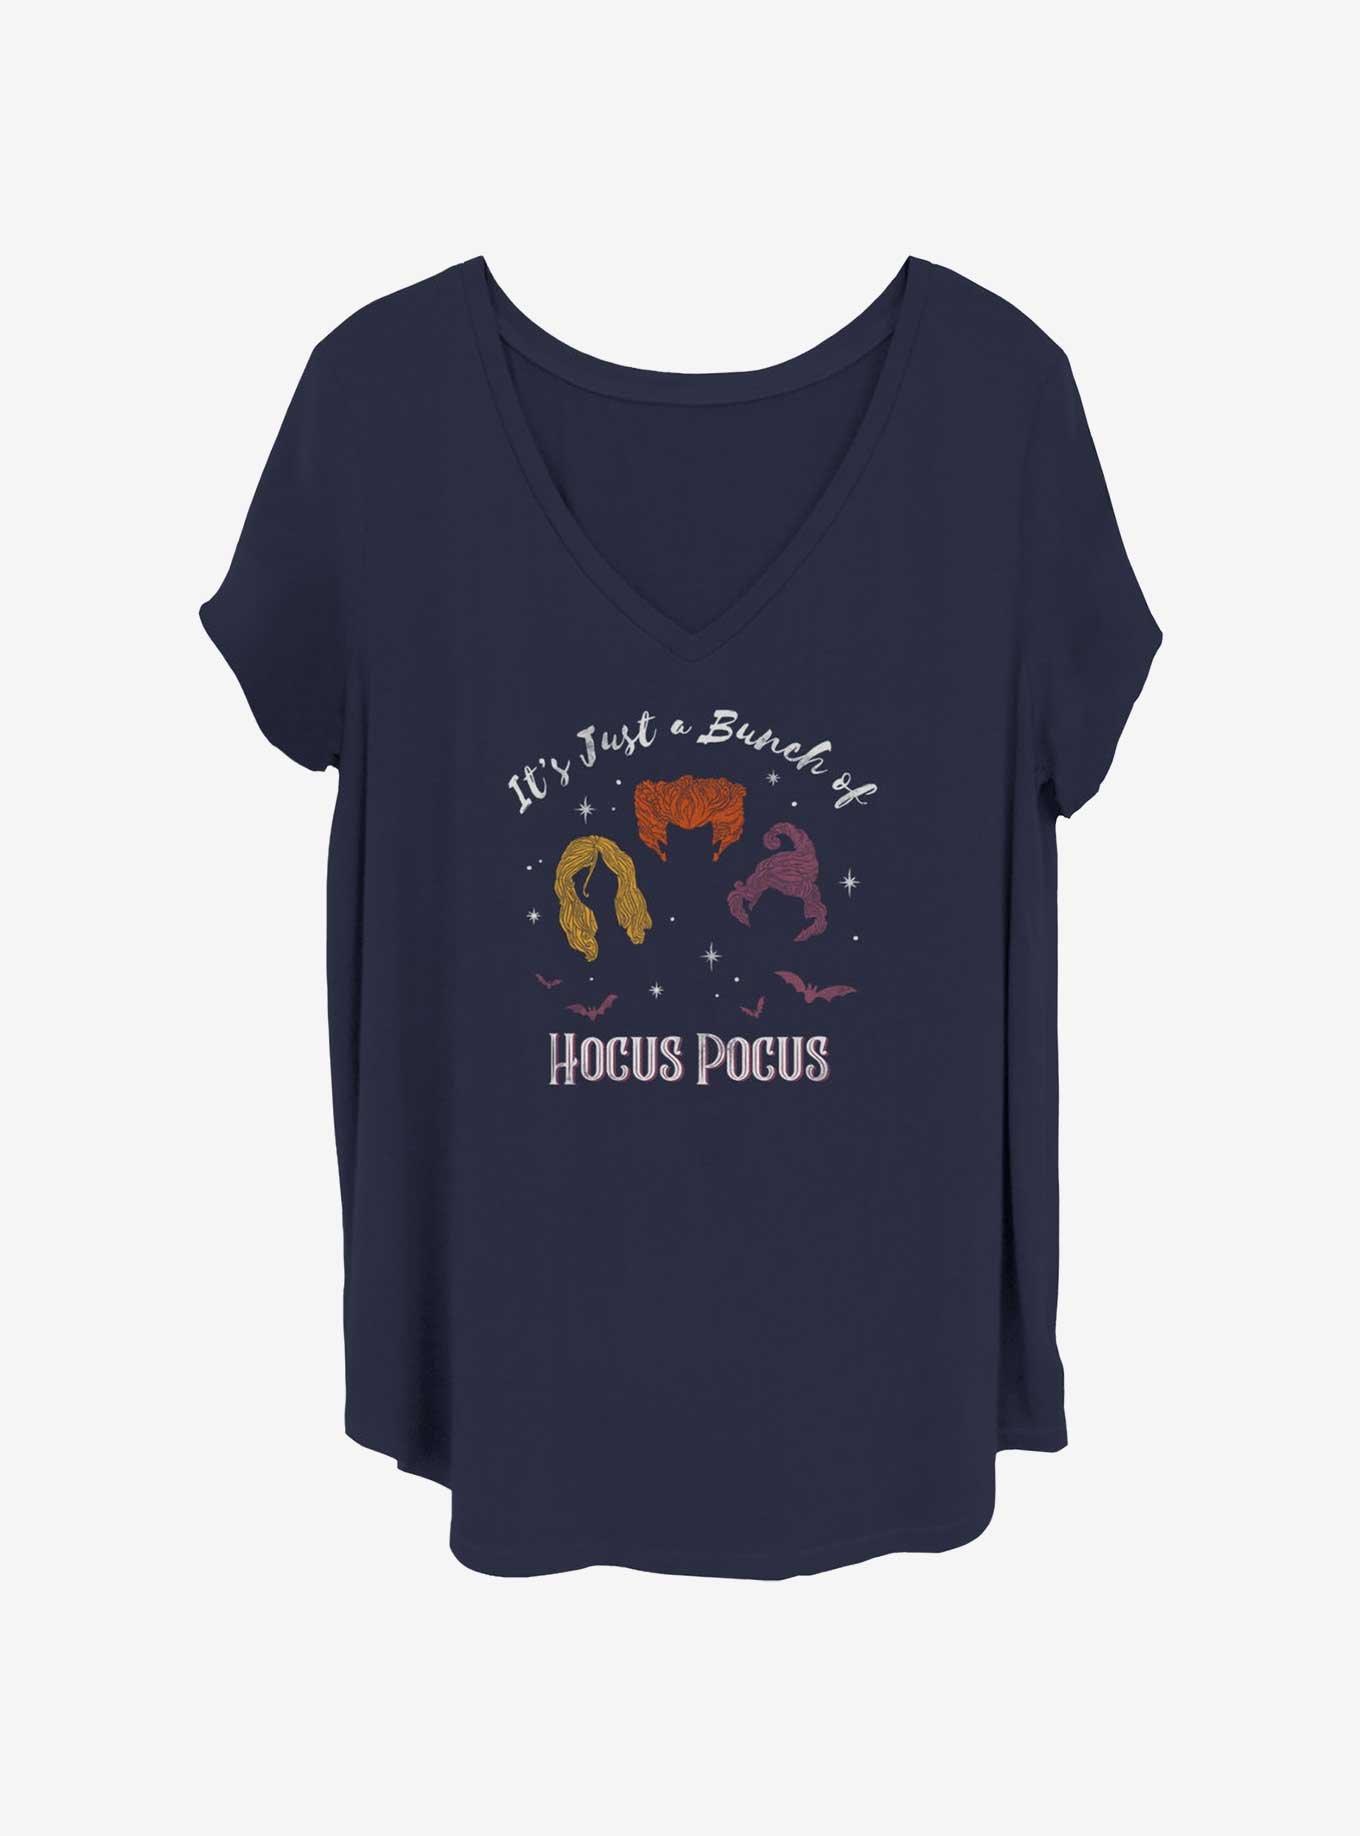 Disney Hocus Pocus Sanderson Sisters Womens T-Shirt Plus Size, NAVY, hi-res